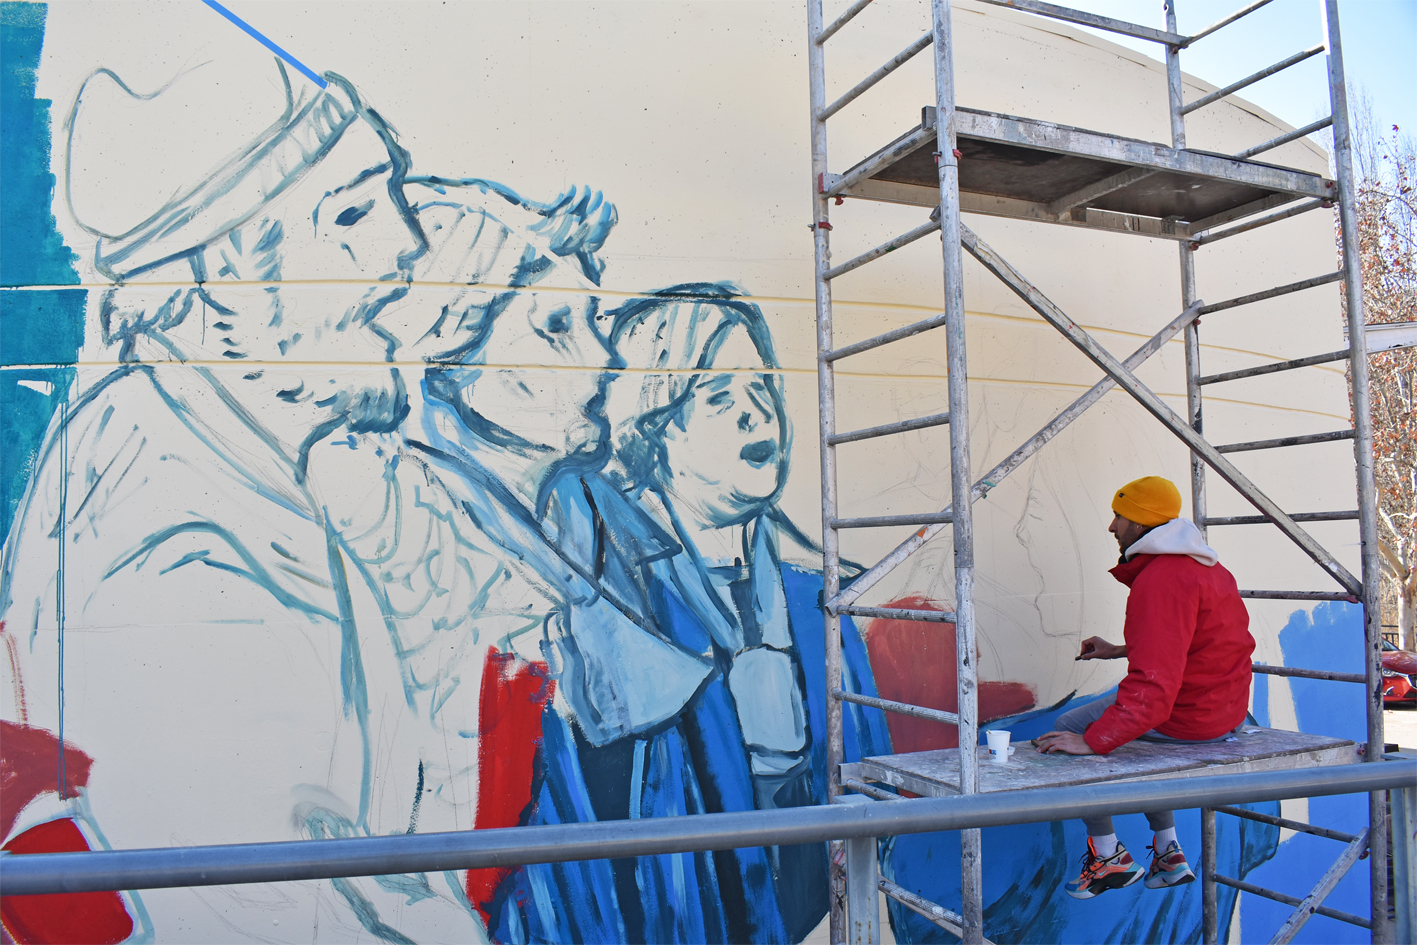 Pintat del nou mural de Caramelles en una façana de l'Estació d'Autobusos.